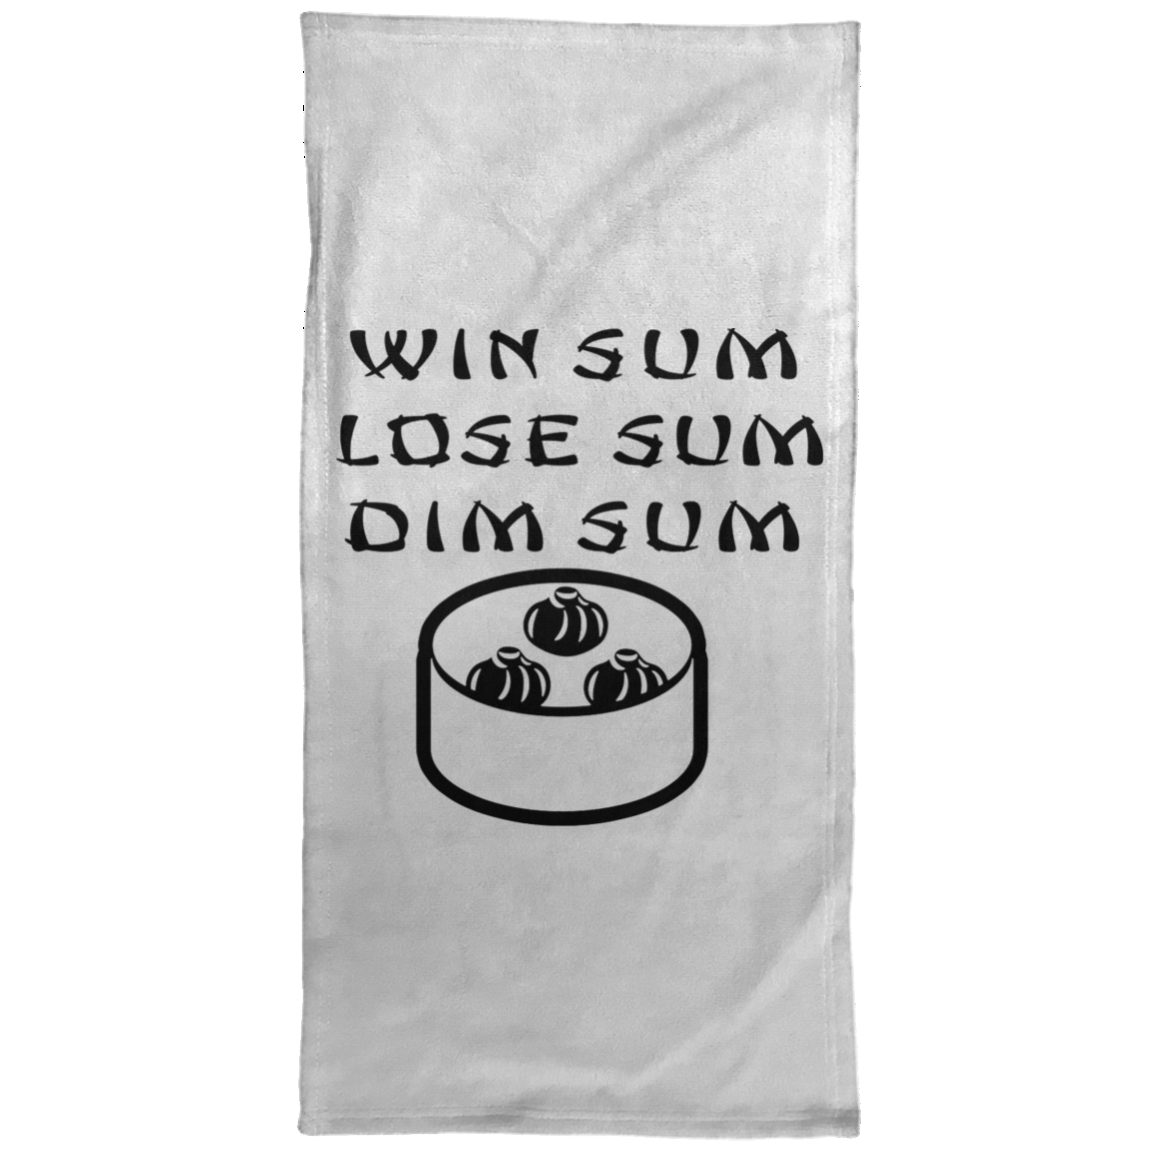 ArtichokeUSA Custom Design. Win Sum Lose Some. Dim Sum. Towel - 15x30